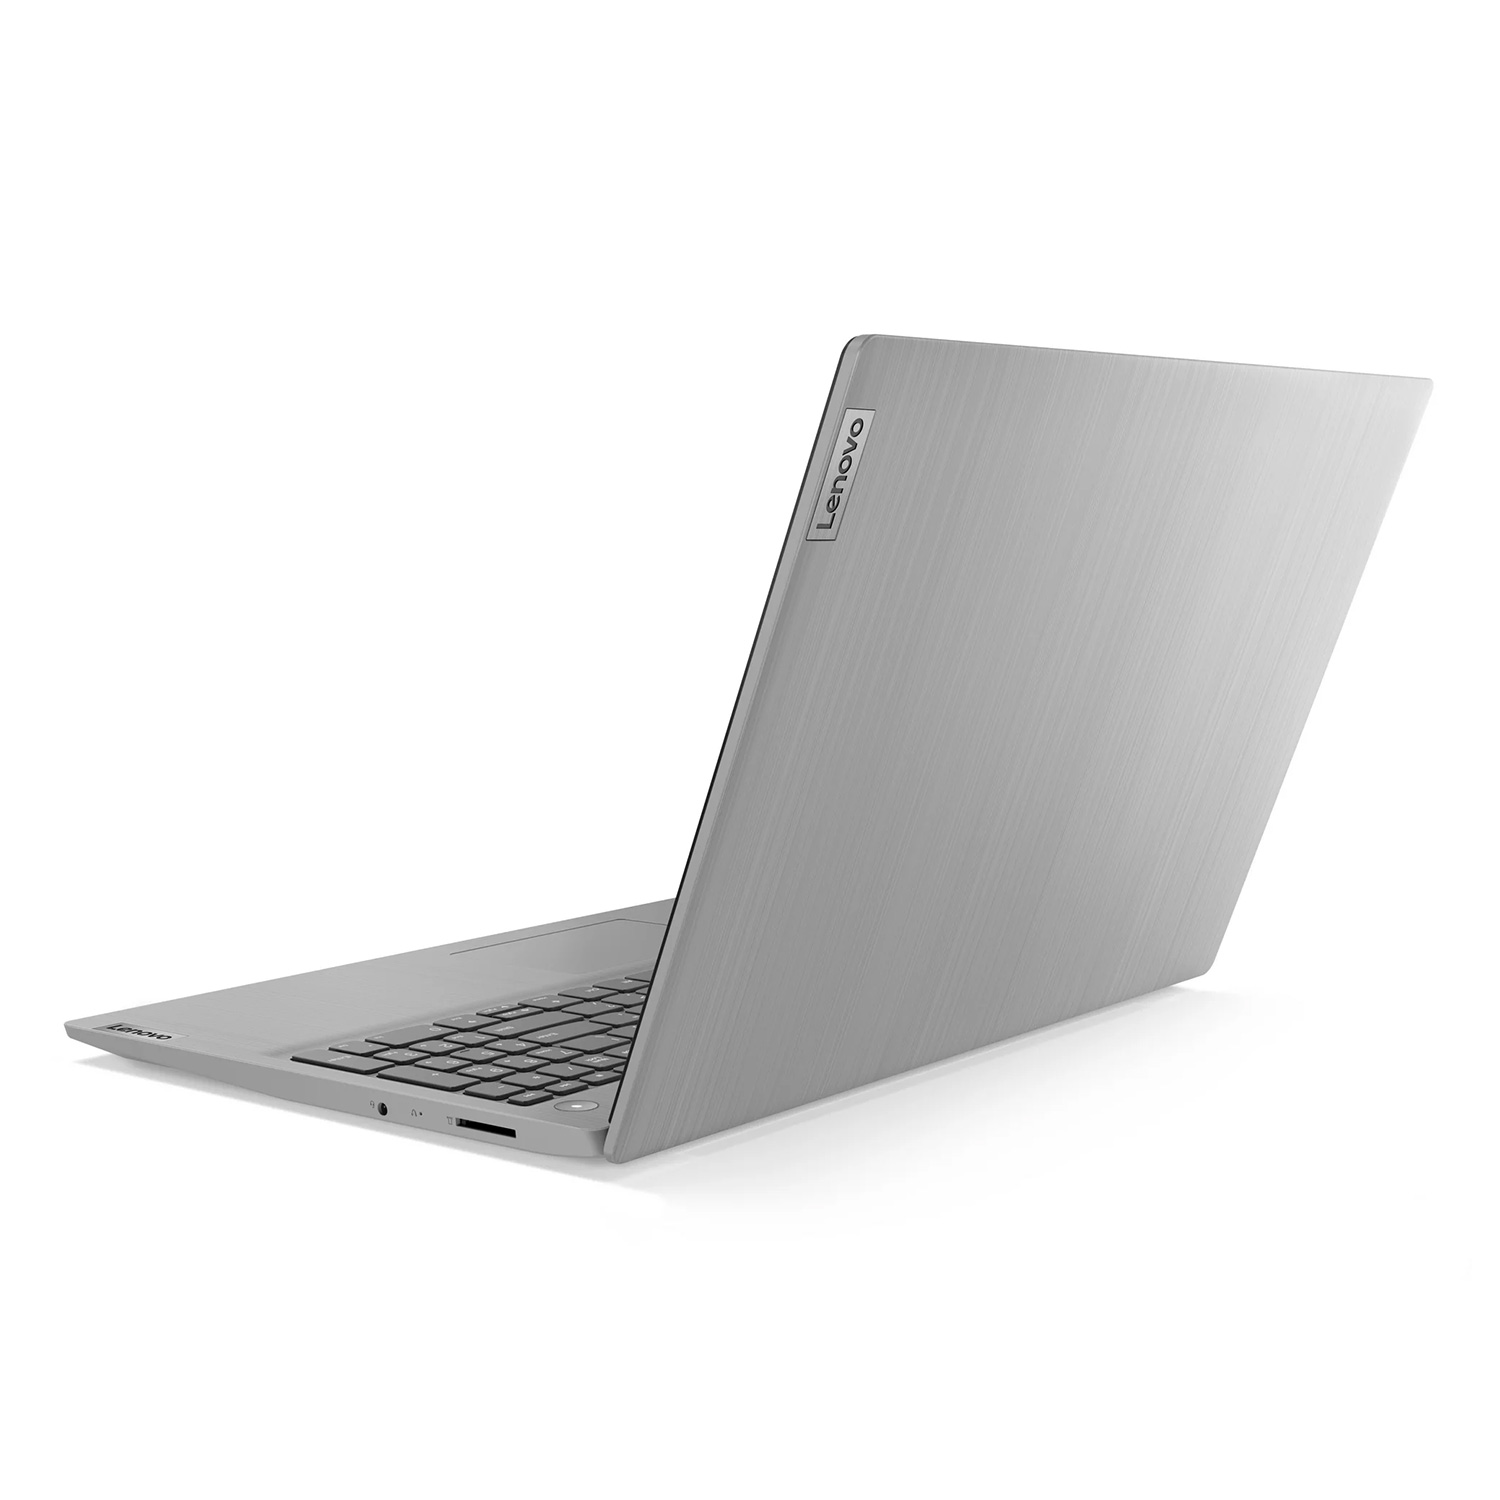 Notebook Lenovo 81X700FGUS 14" Intel Core I3-1115G4 128GB SSD 4GB RAM Tela 14.0" - Cinza